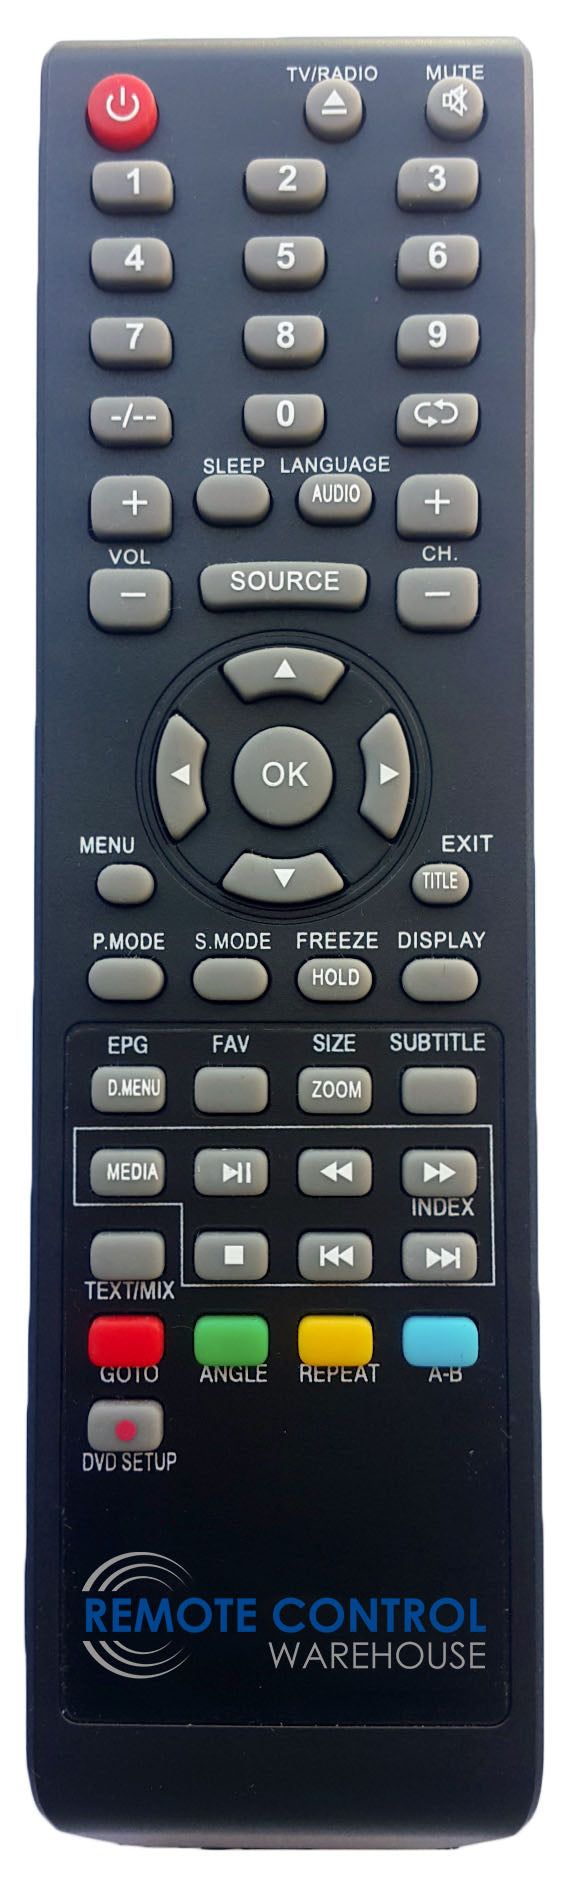 AKAI REPLACEMENT REMOTE CONTROL - AKTV-24COM AKTV24COM LCD LED TV - Remote Control Warehouse